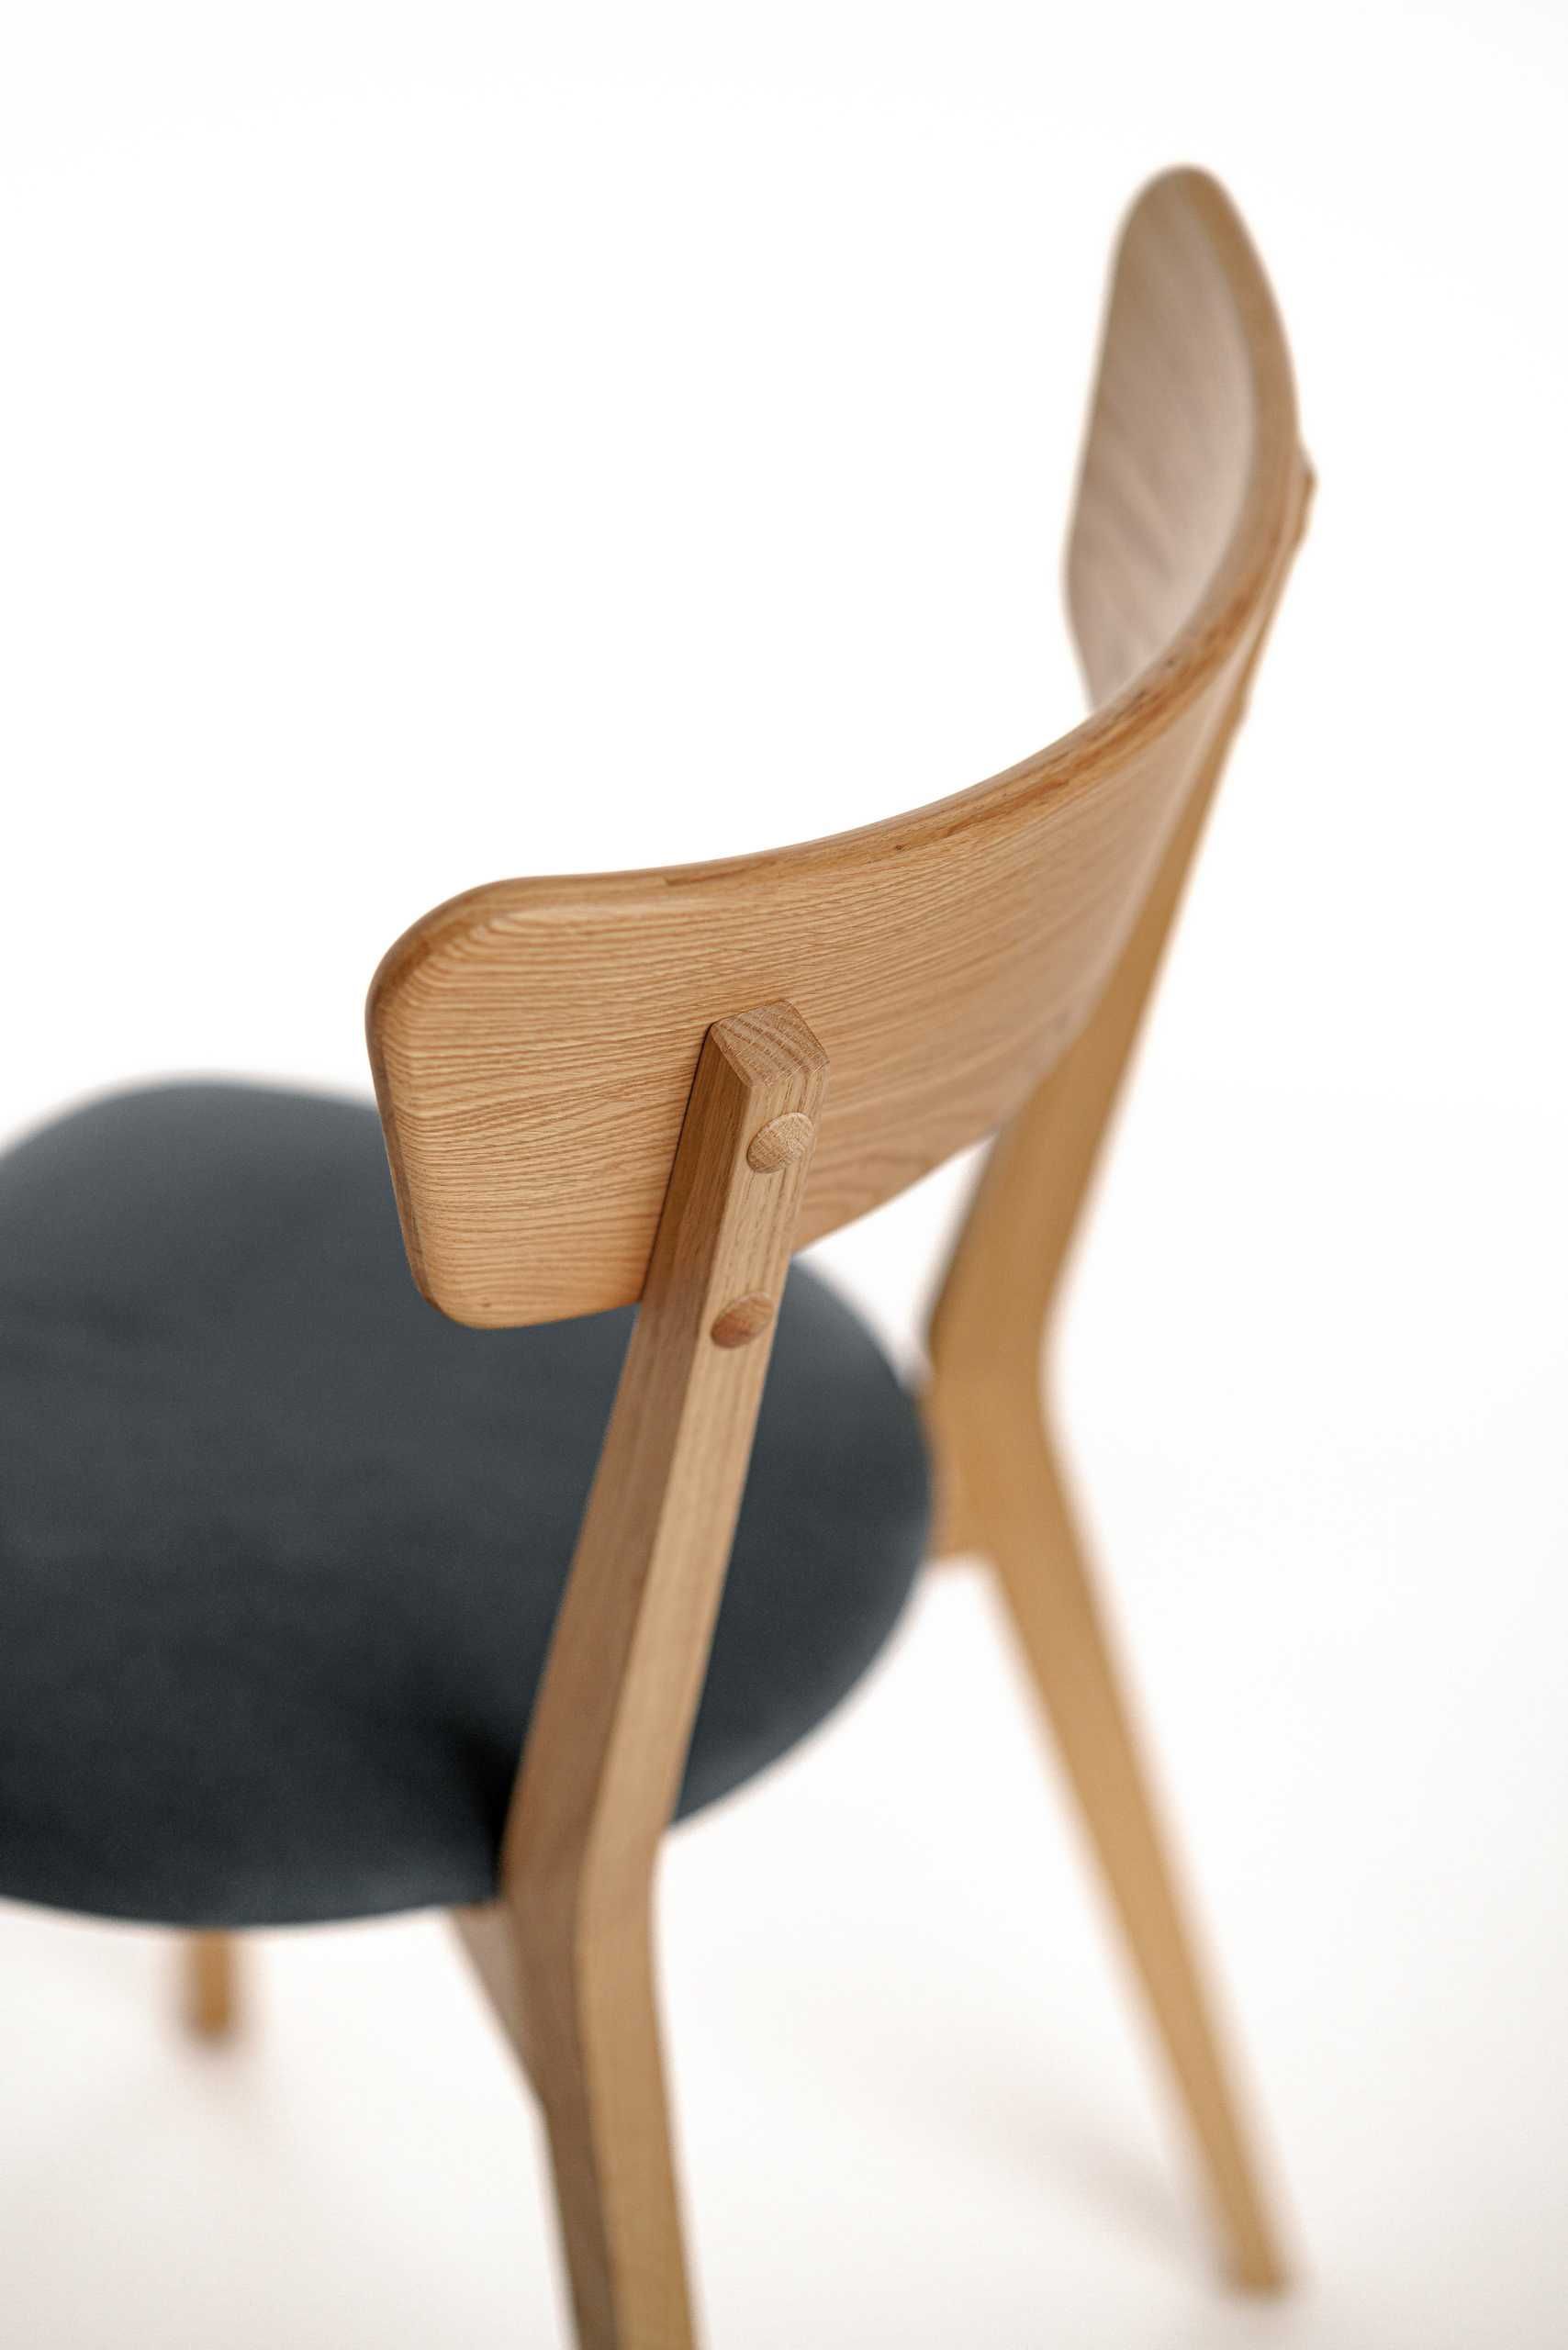 Krzesło dębowe 100 % - Krzesło tapicerowane - od ręki - dostawa gratis